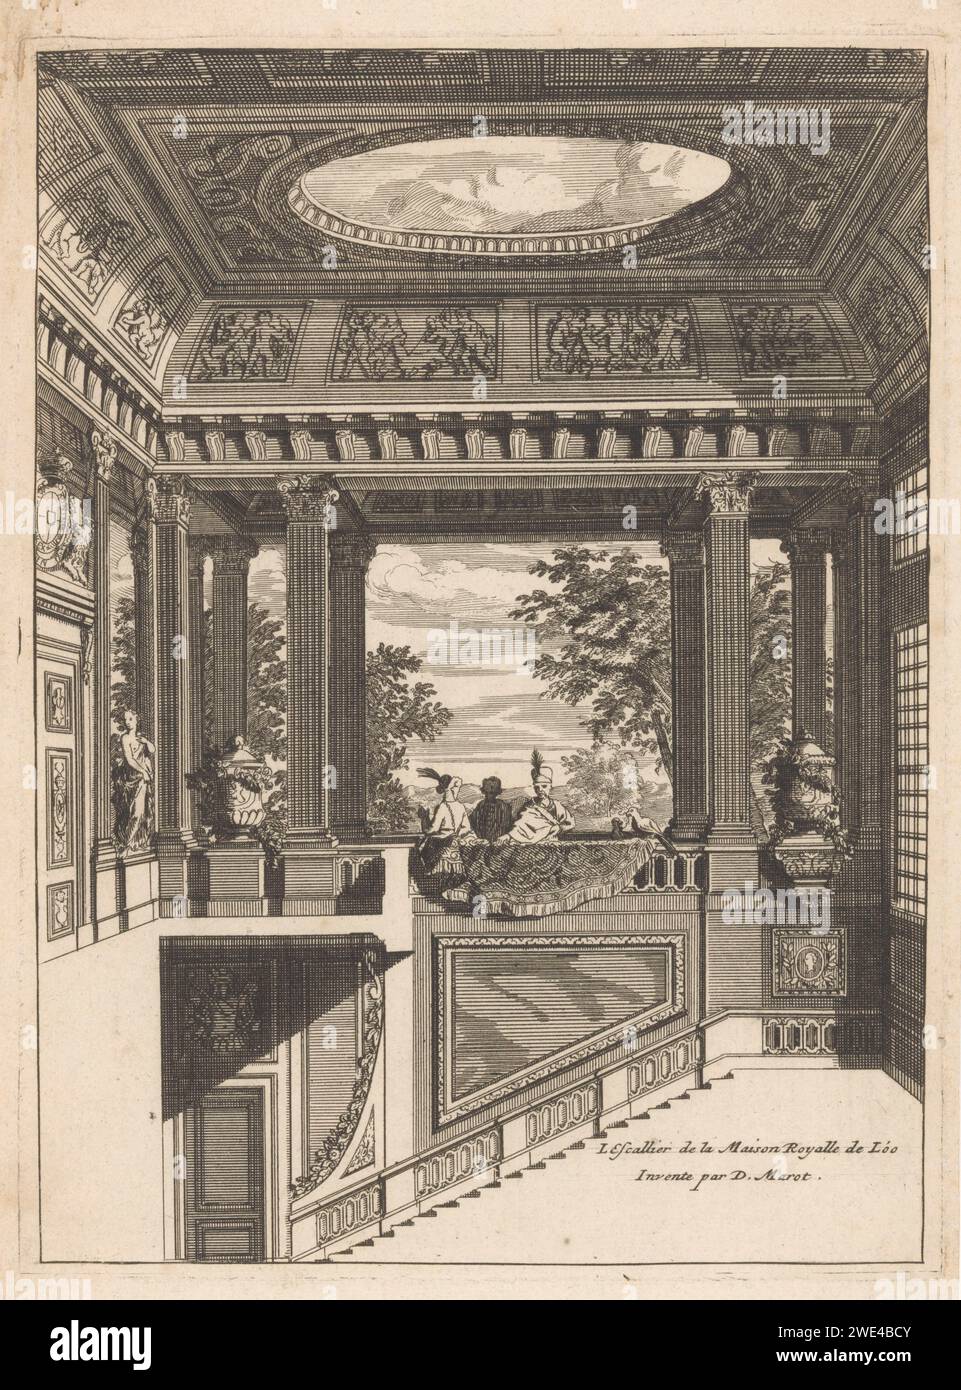 Trompe-l'oeil Décoration pour la cage d'escalier de Paleis Het Loo, Anonyme, Daniël Marot (I), en ou après 1703 imprimer Décoration pour la cage d'escalier de Paleis Het Loo avec balustrade, colonnes scannées et oculus au plafond. Escalier de gravure de papier. 'illusion d'optique' Banque D'Images